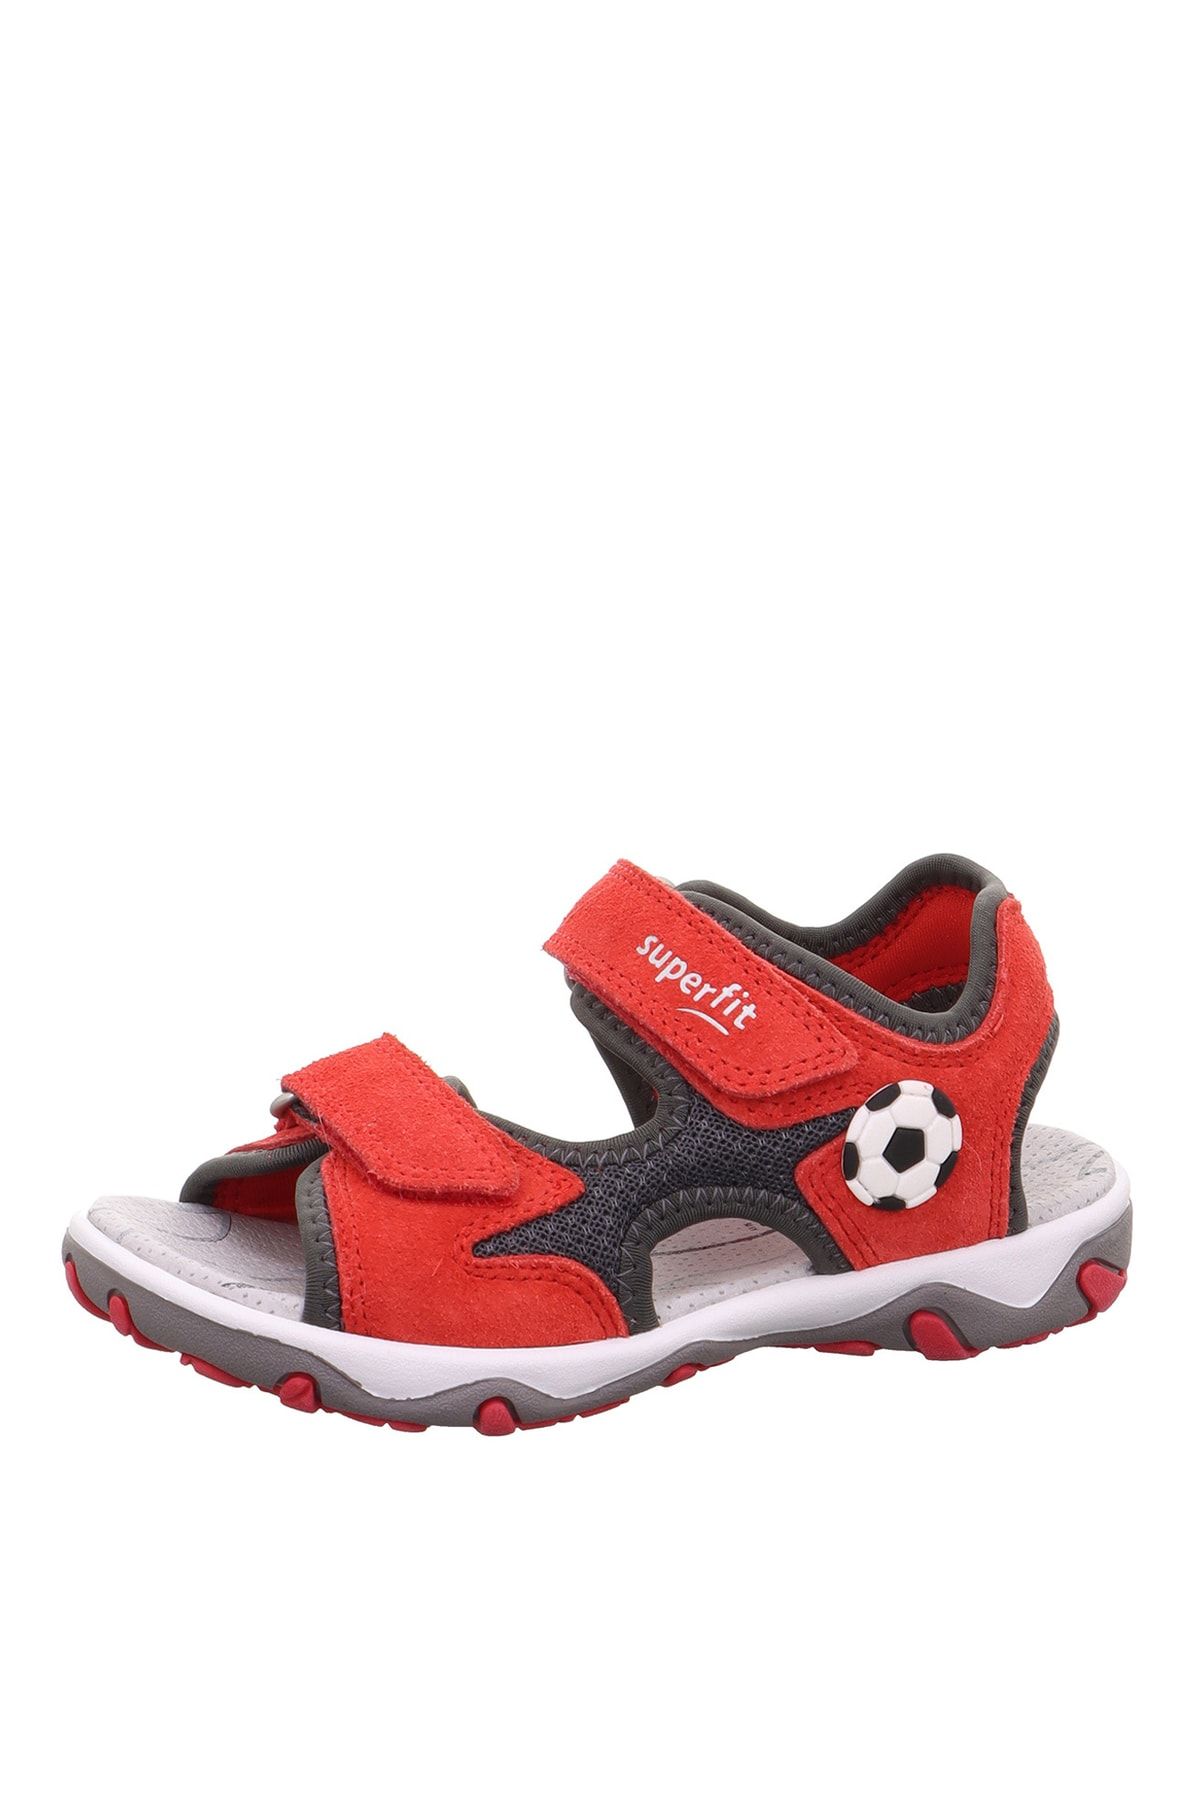 Superfit Kırmızı - Gri Erkek Çocuk Sandalet Mıke 3.0 1-009469-5000-3